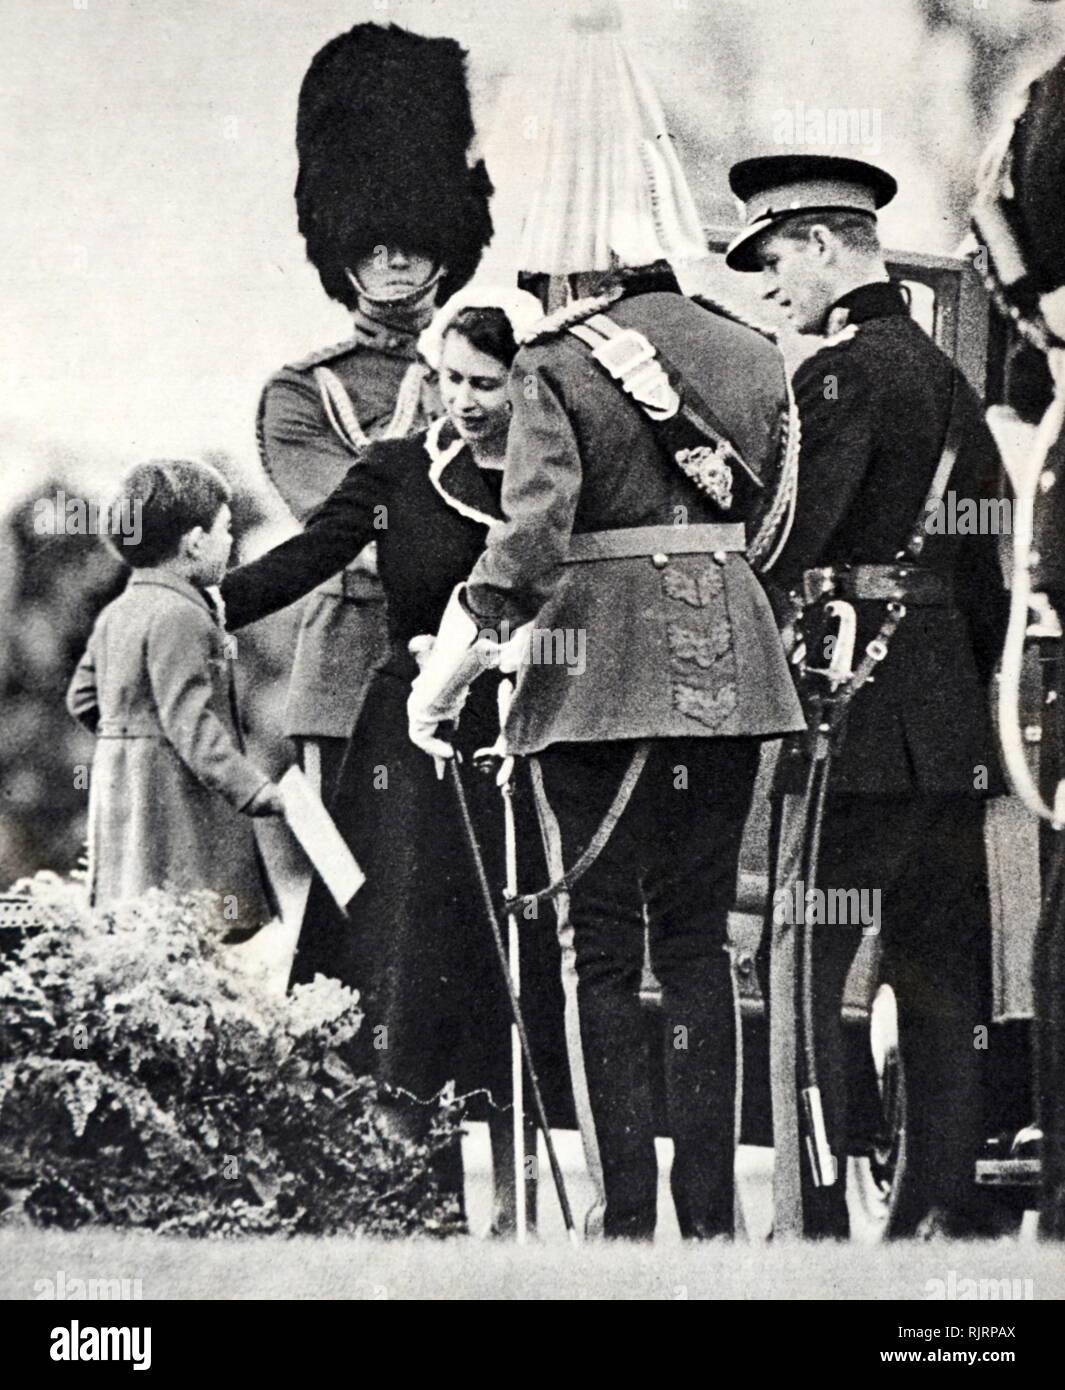 Les étalons soumis à la reine Elizabeth II en tant que le Prince Charles se joint à sa mère. 1953&# 13 ;&# 10 ; Banque D'Images